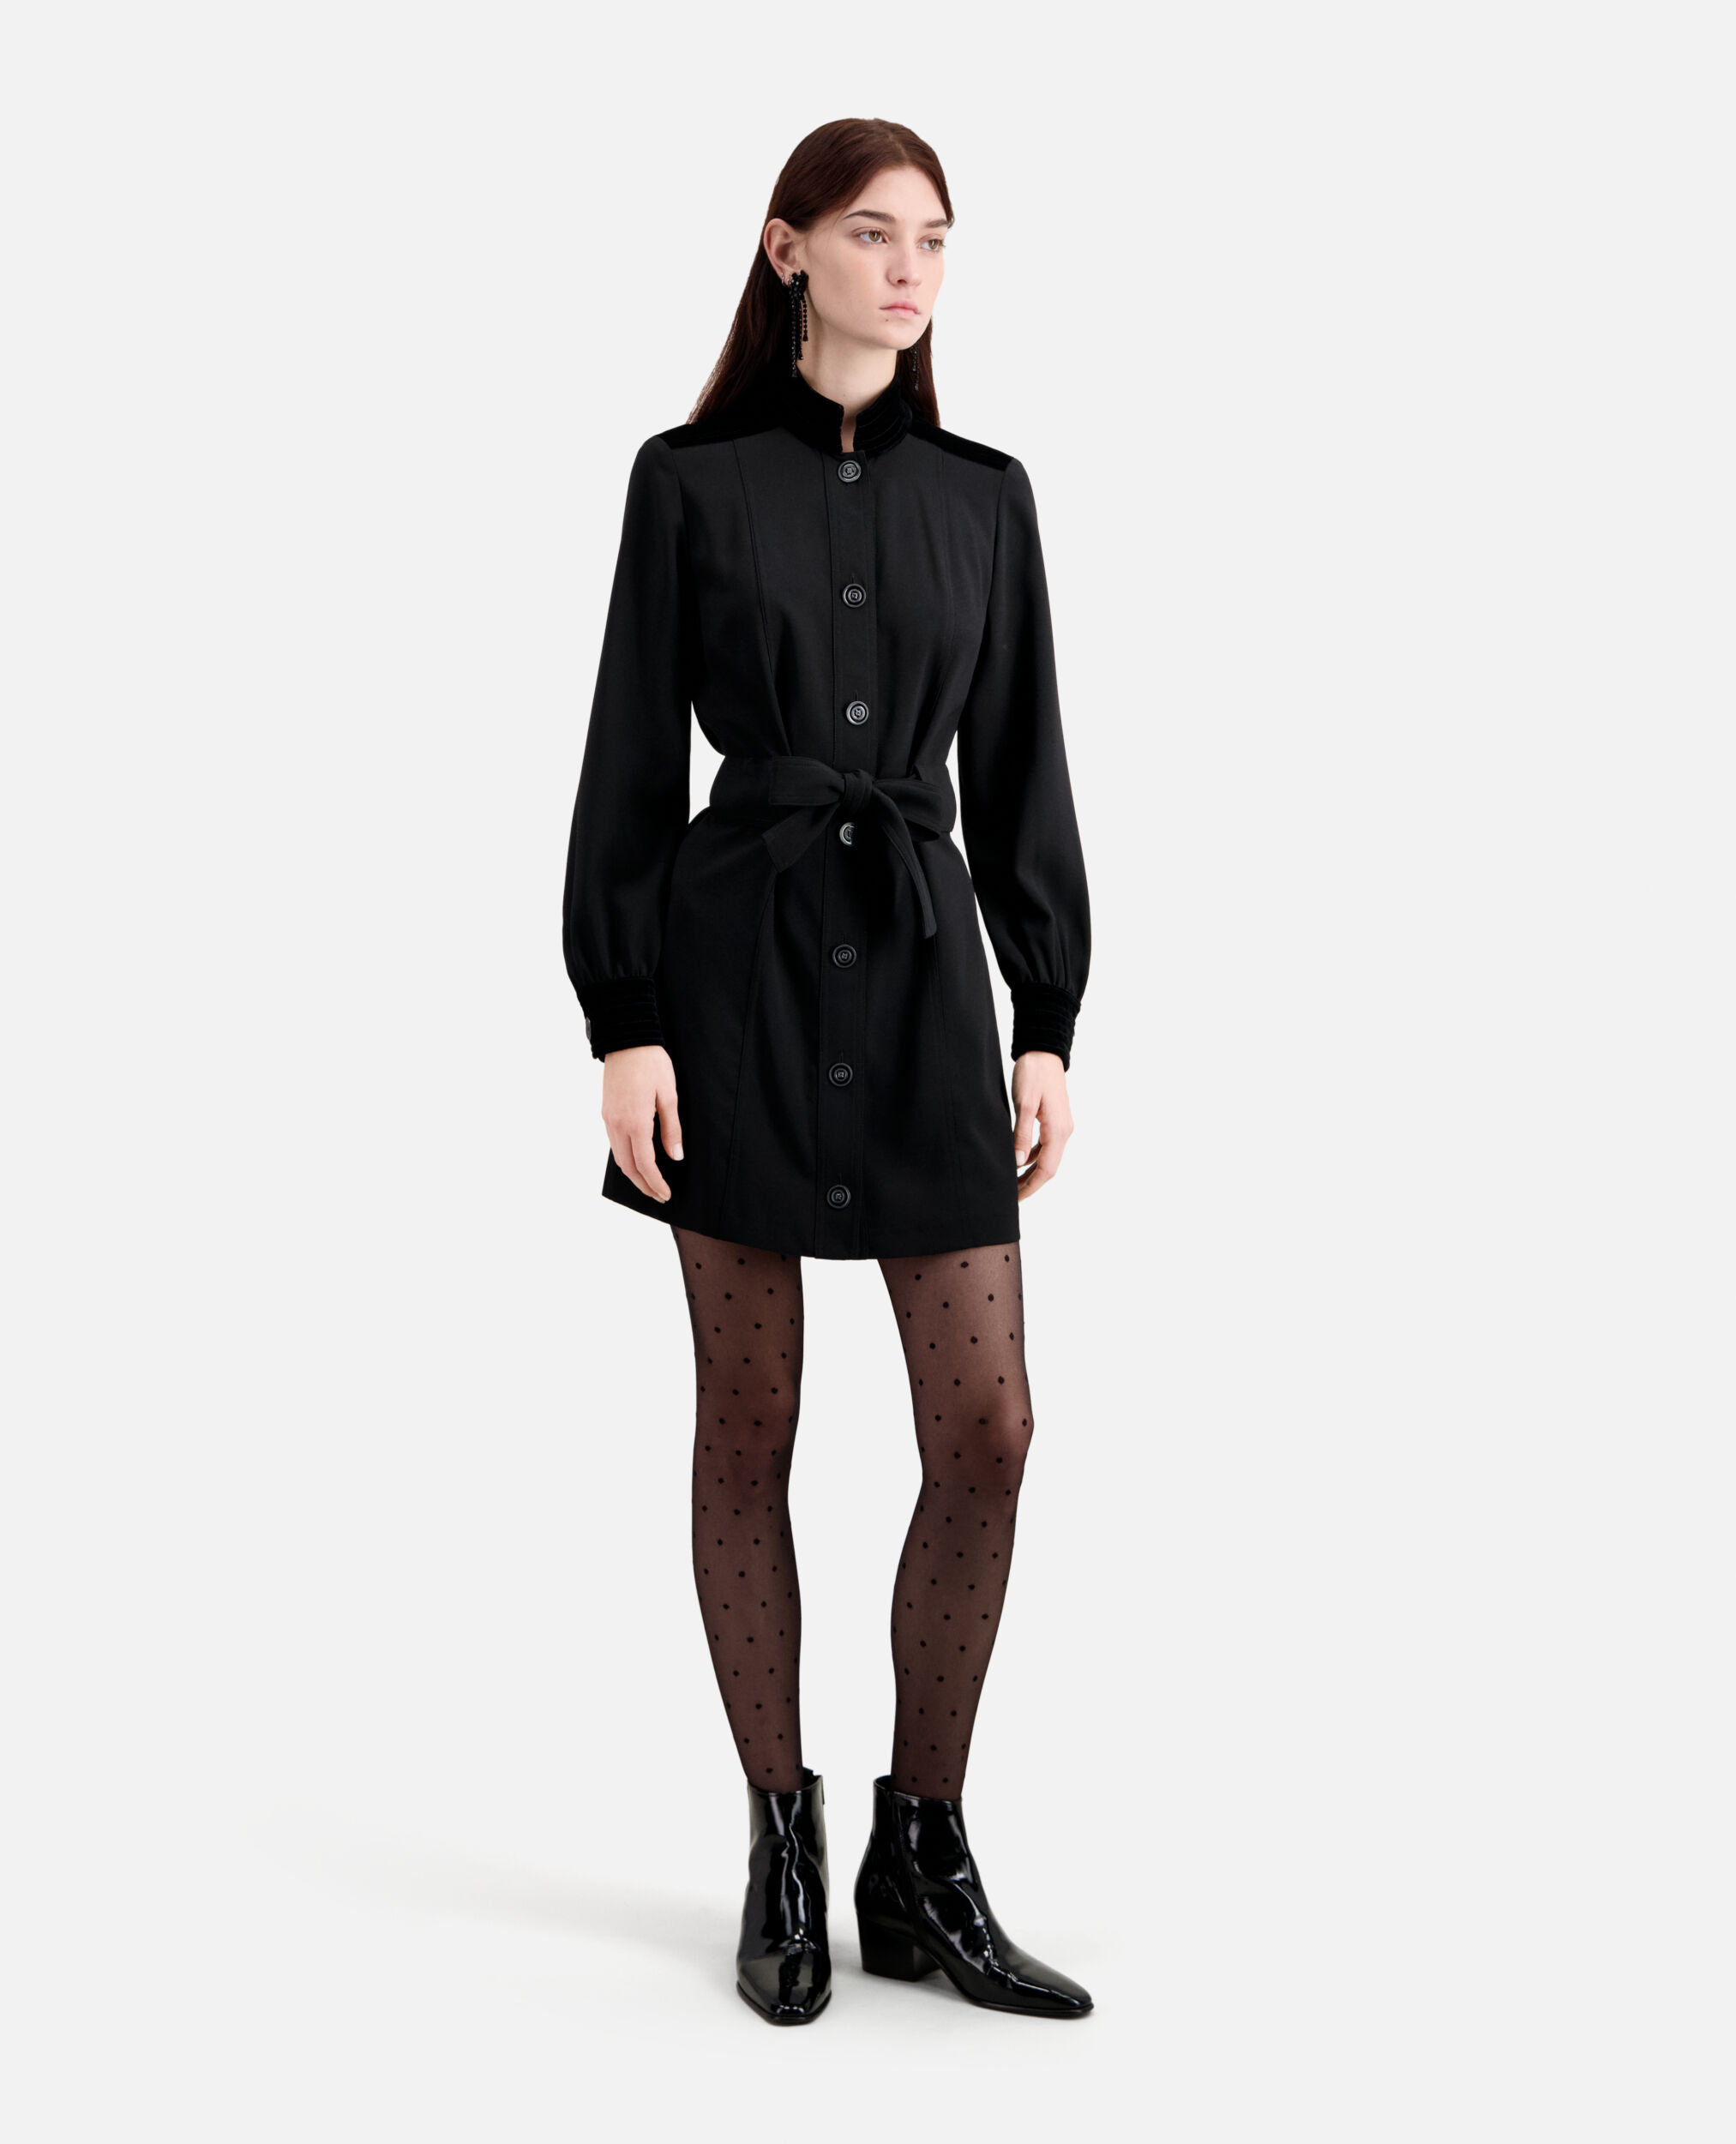 dress - Kooples details | velvet with The Short black crepe US